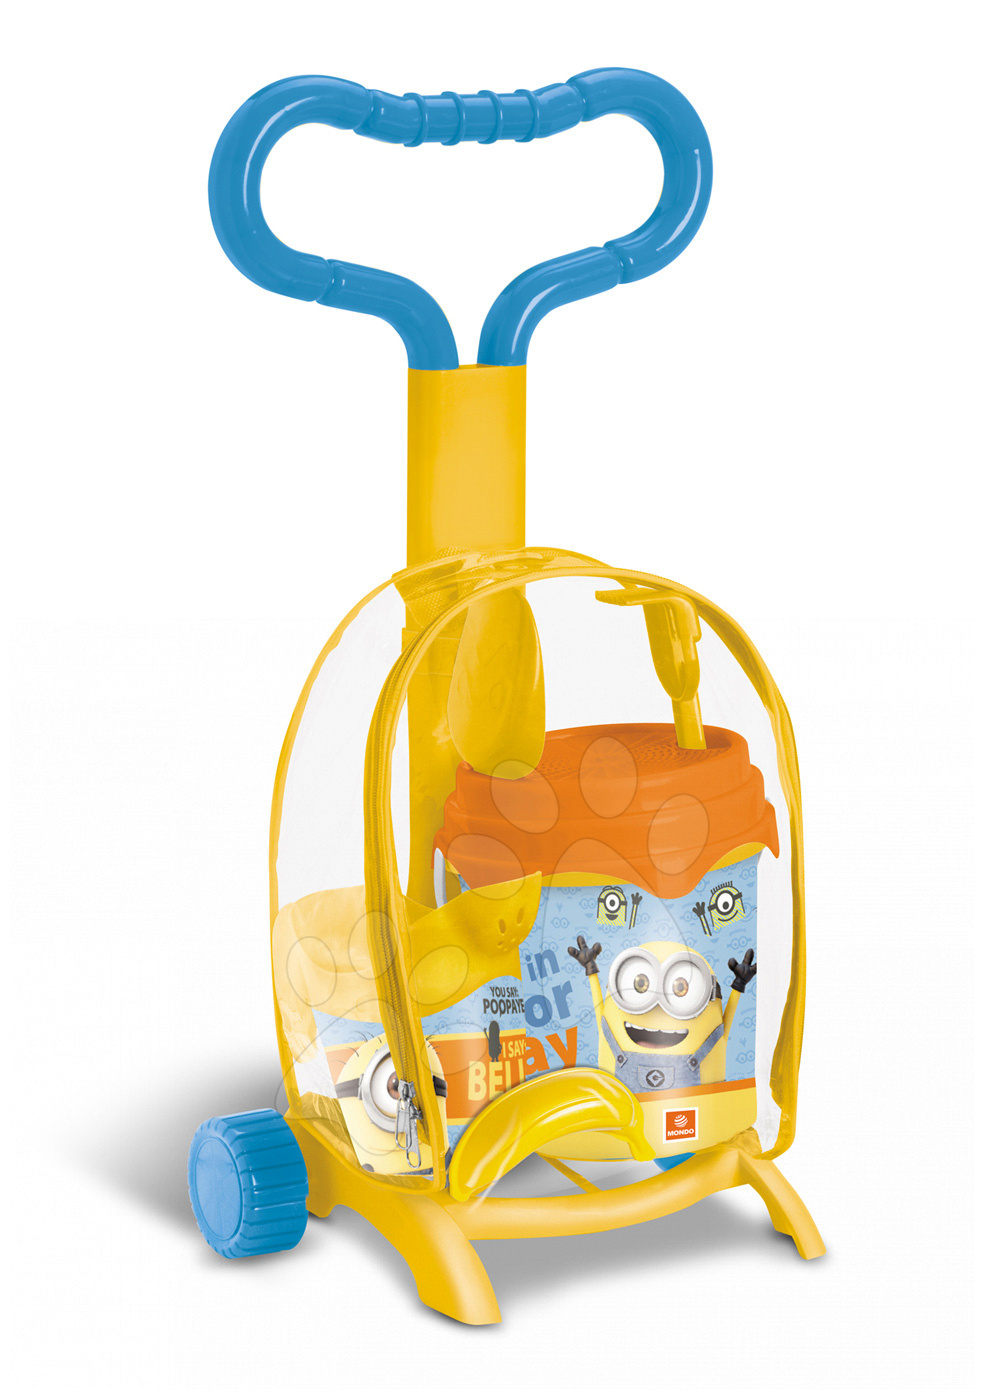 Mondo detský vozík s vedierkom Minion Made 28146 žlto-oranžový